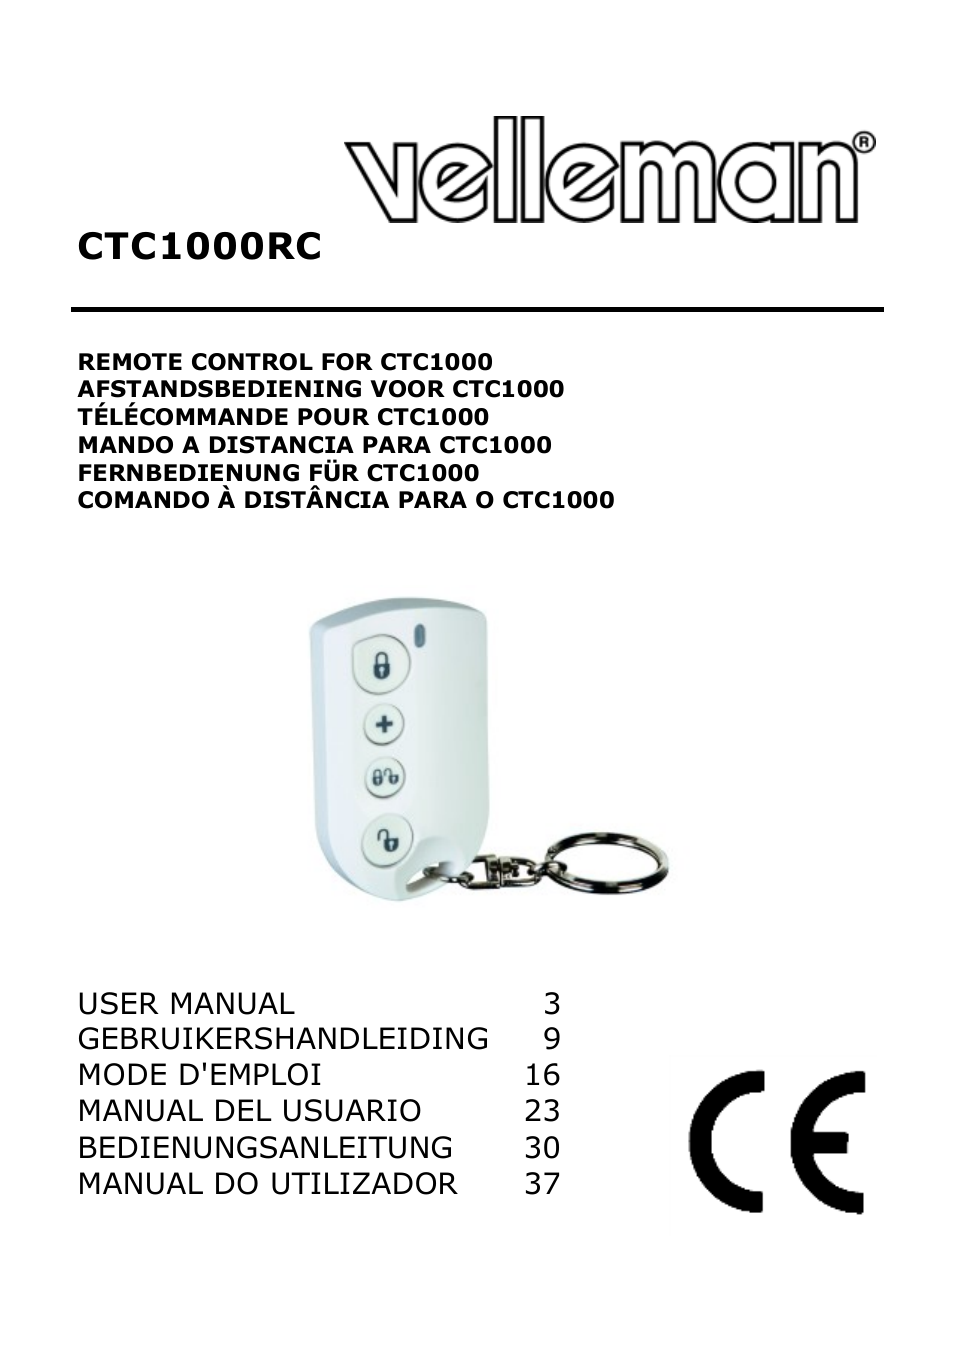 CTC1000RC